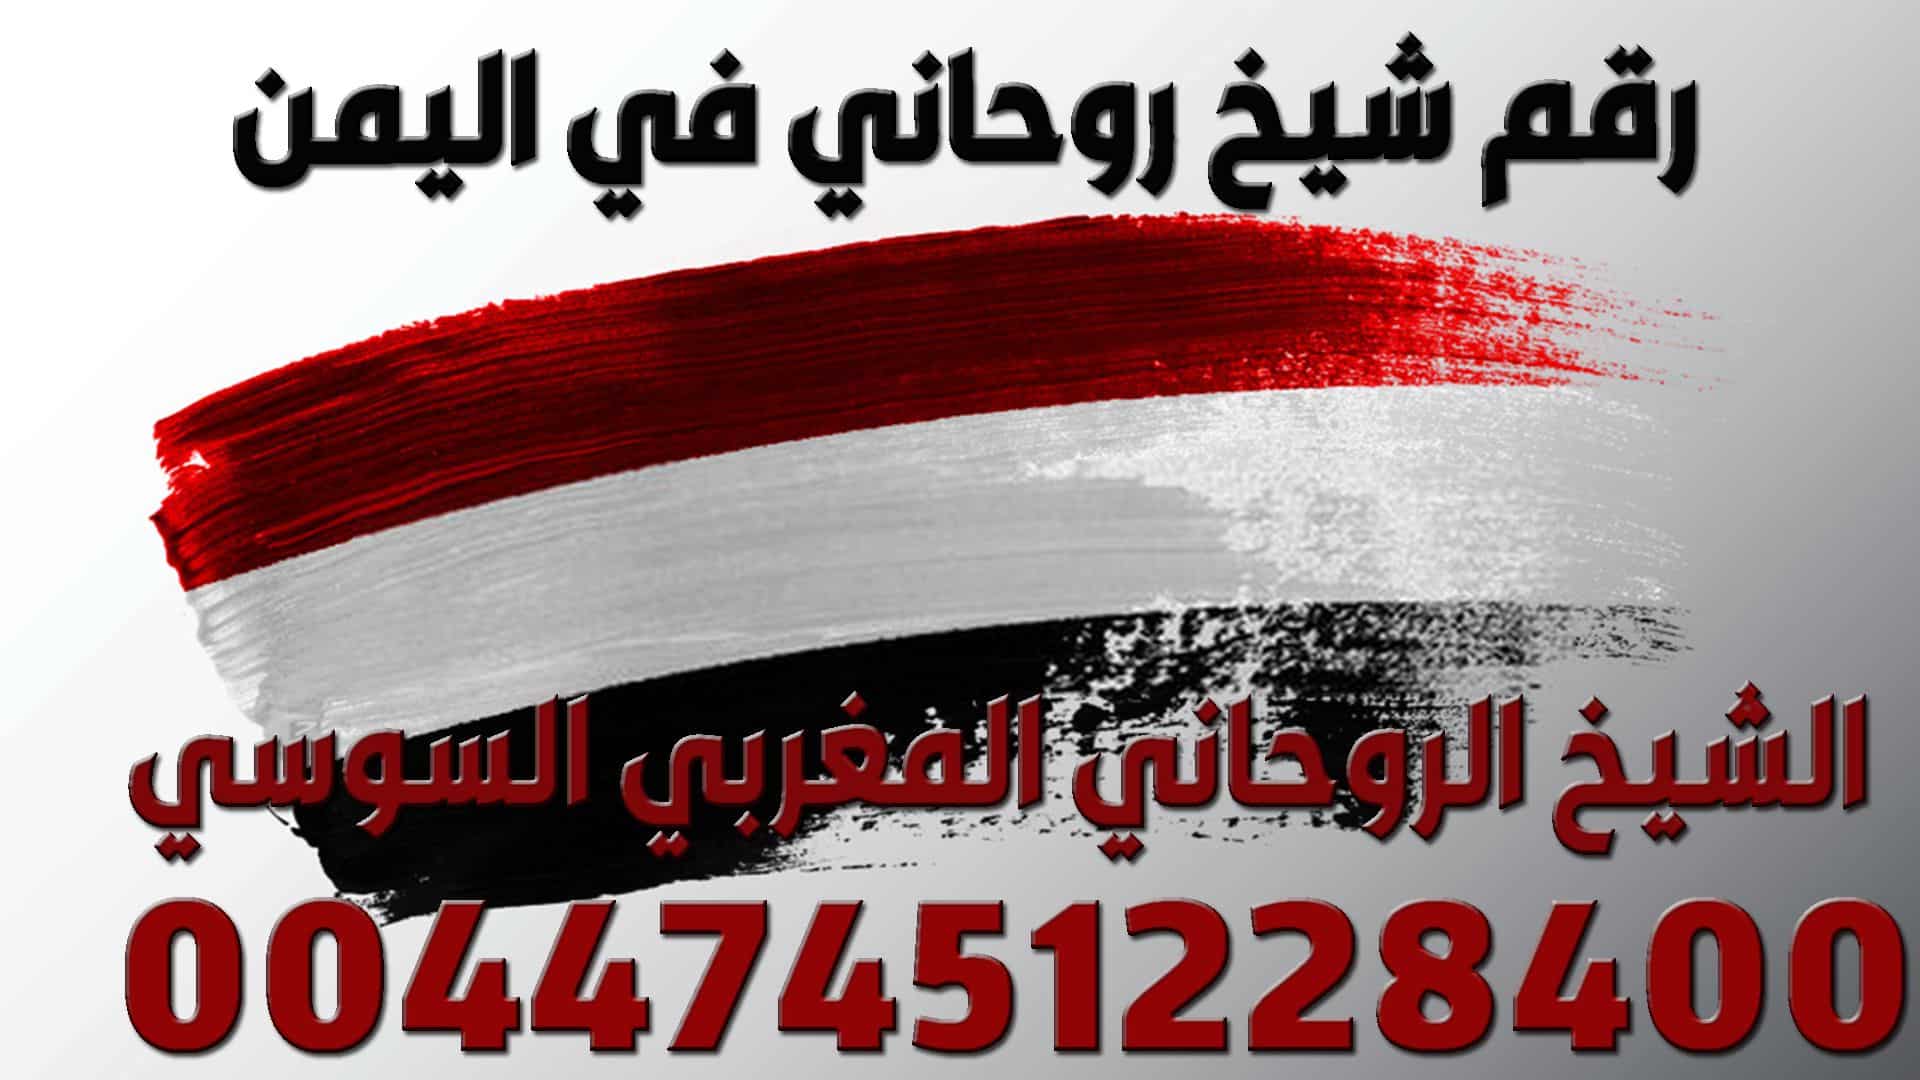 رقم شيخ روحاني في اليمن